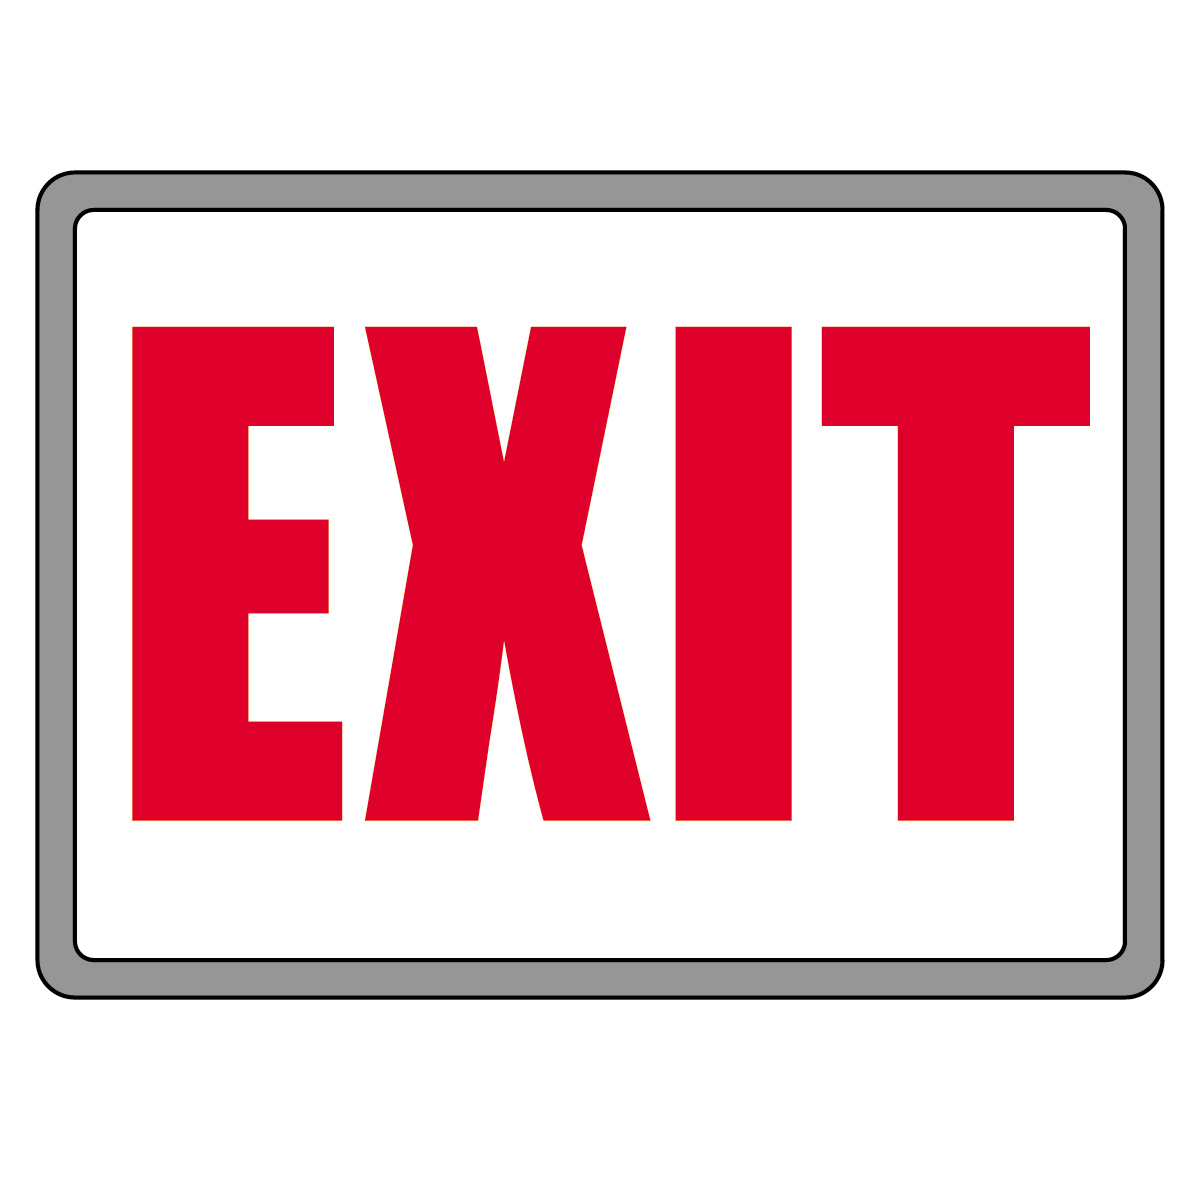 No Exit Sign Clipart